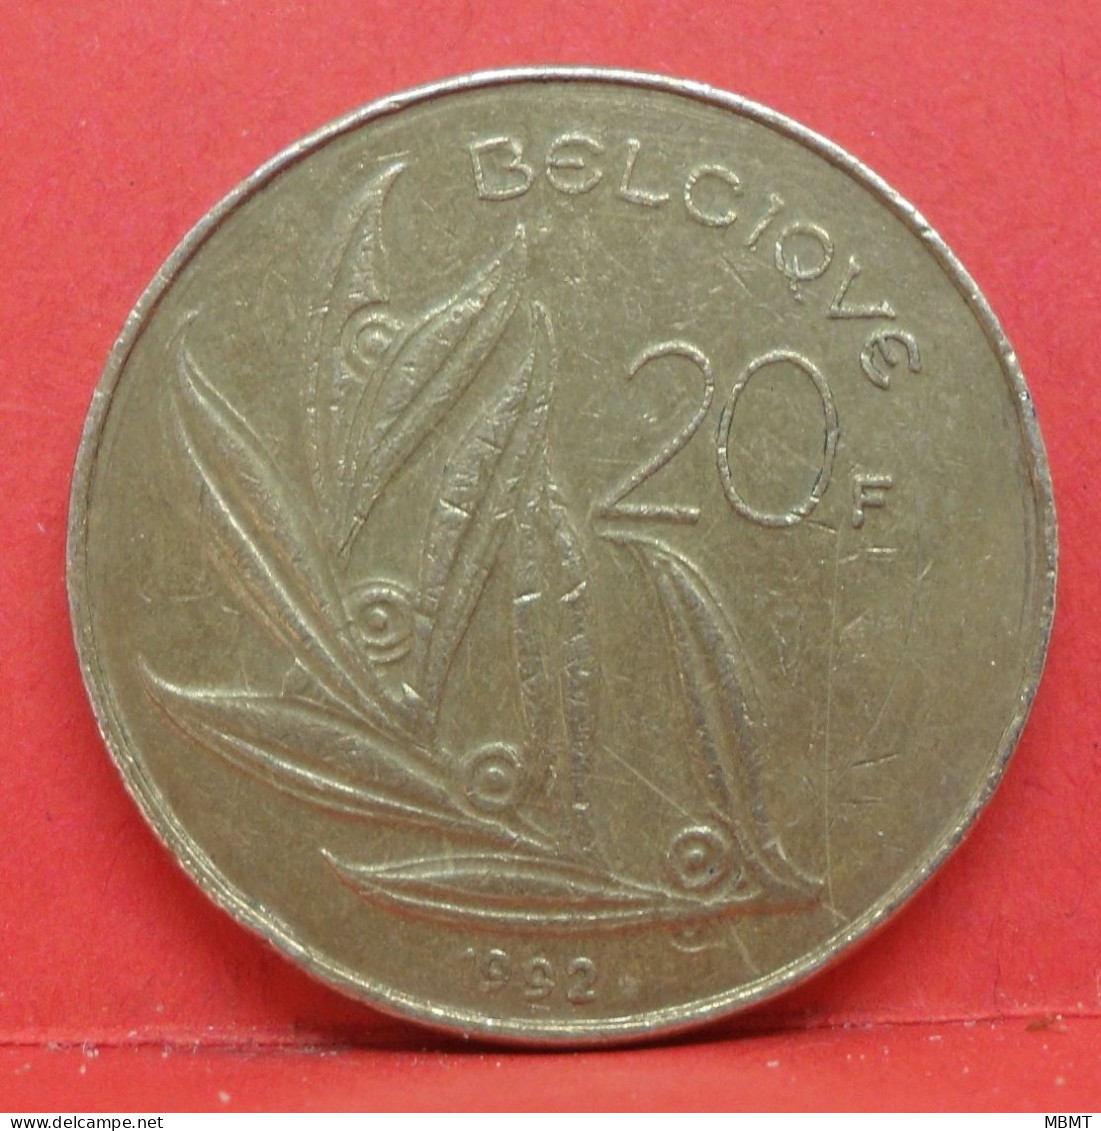 20 Francs 1992 - TB - Pièce Monnaie Belgique - Article N°1847 - 20 Frank